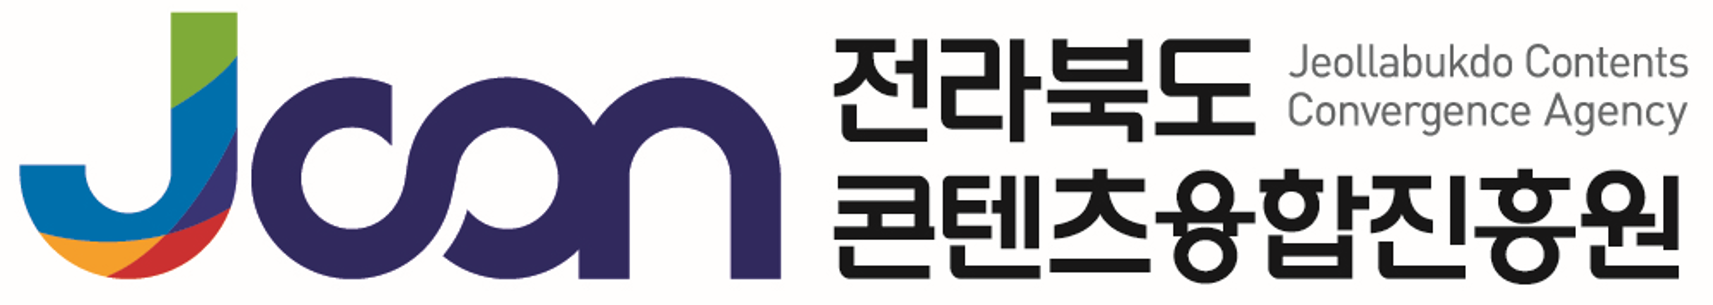 (재)전북특별자치도콘텐츠융합진흥원의 기업로고